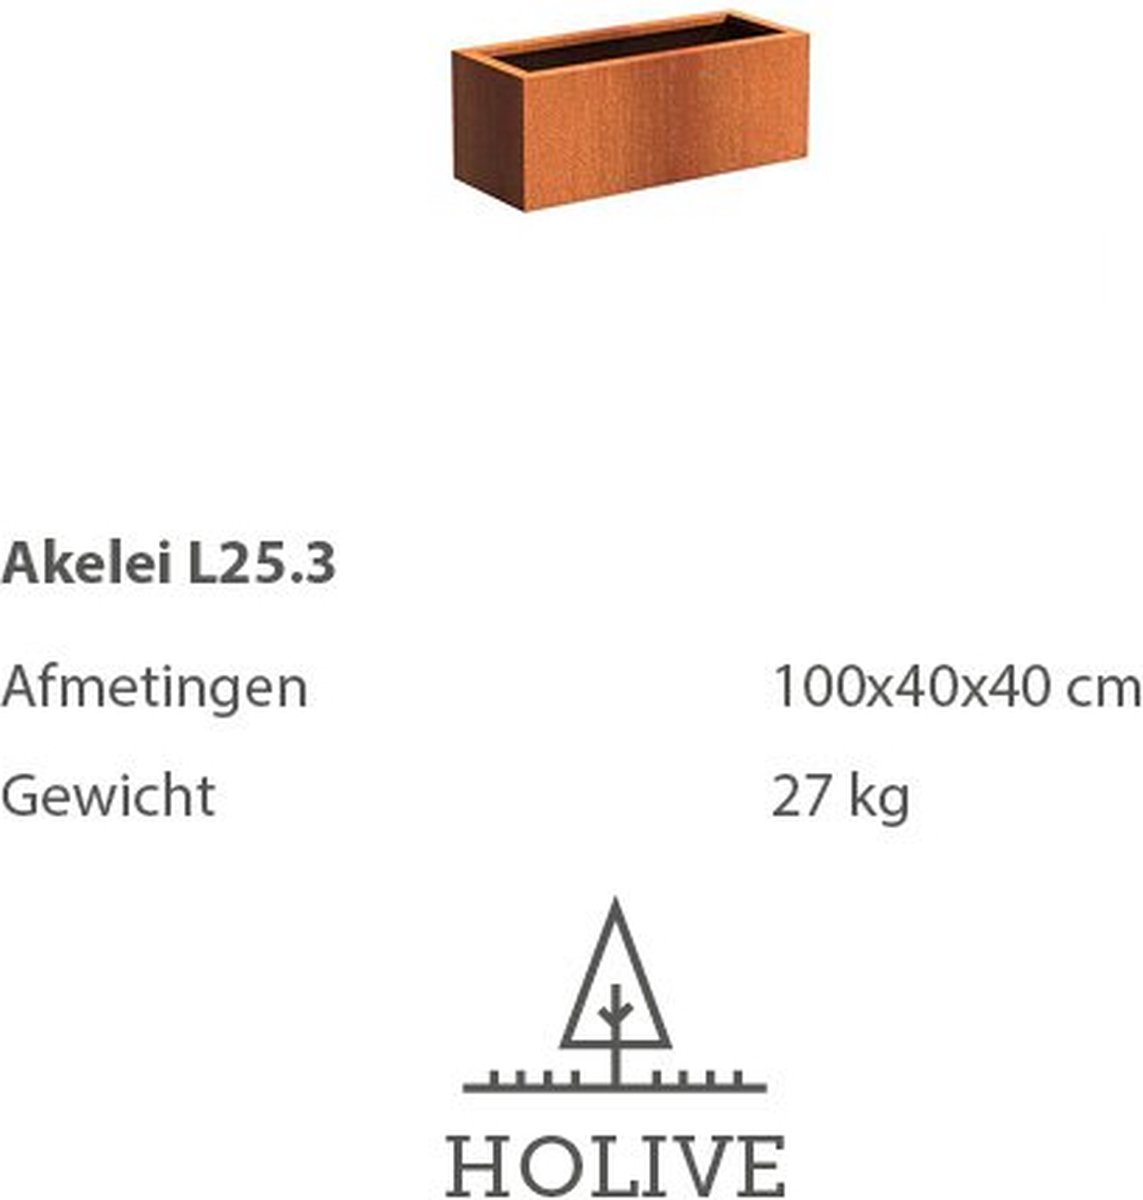 Cortenstaal Akelei L25.3 rechthoek 100x40x40 cm. Plantenbak